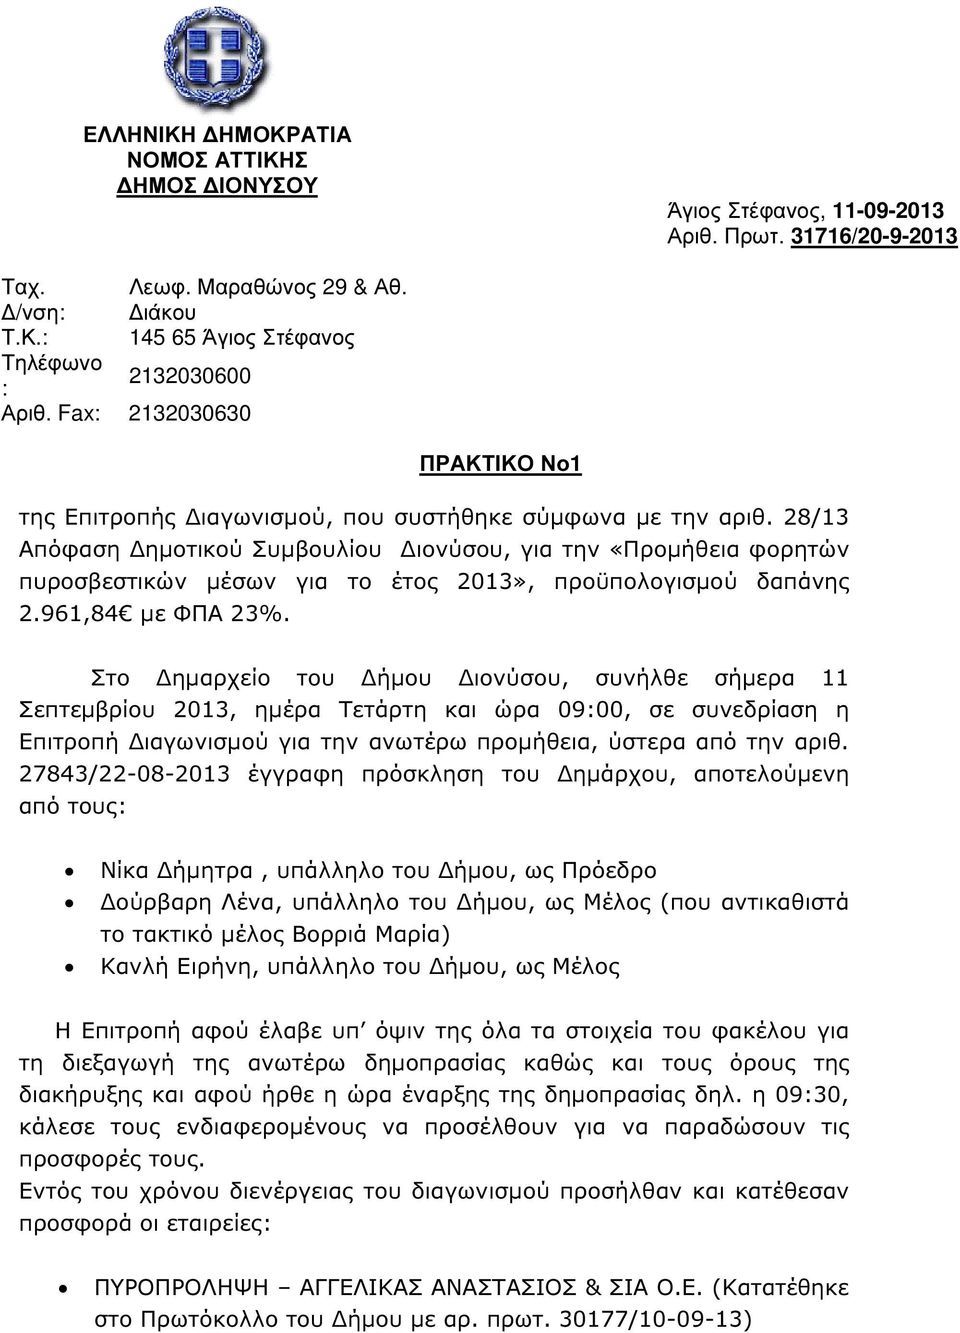 28/13 Απόφαση ηµοτικού Συµβουλίου ιονύσου, για την «Προµήθεια φορητών πυροσβεστικών µέσων για το έτος 2013», προϋπολογισµού δαπάνης 2.961,84 µε ΦΠΑ 23%.